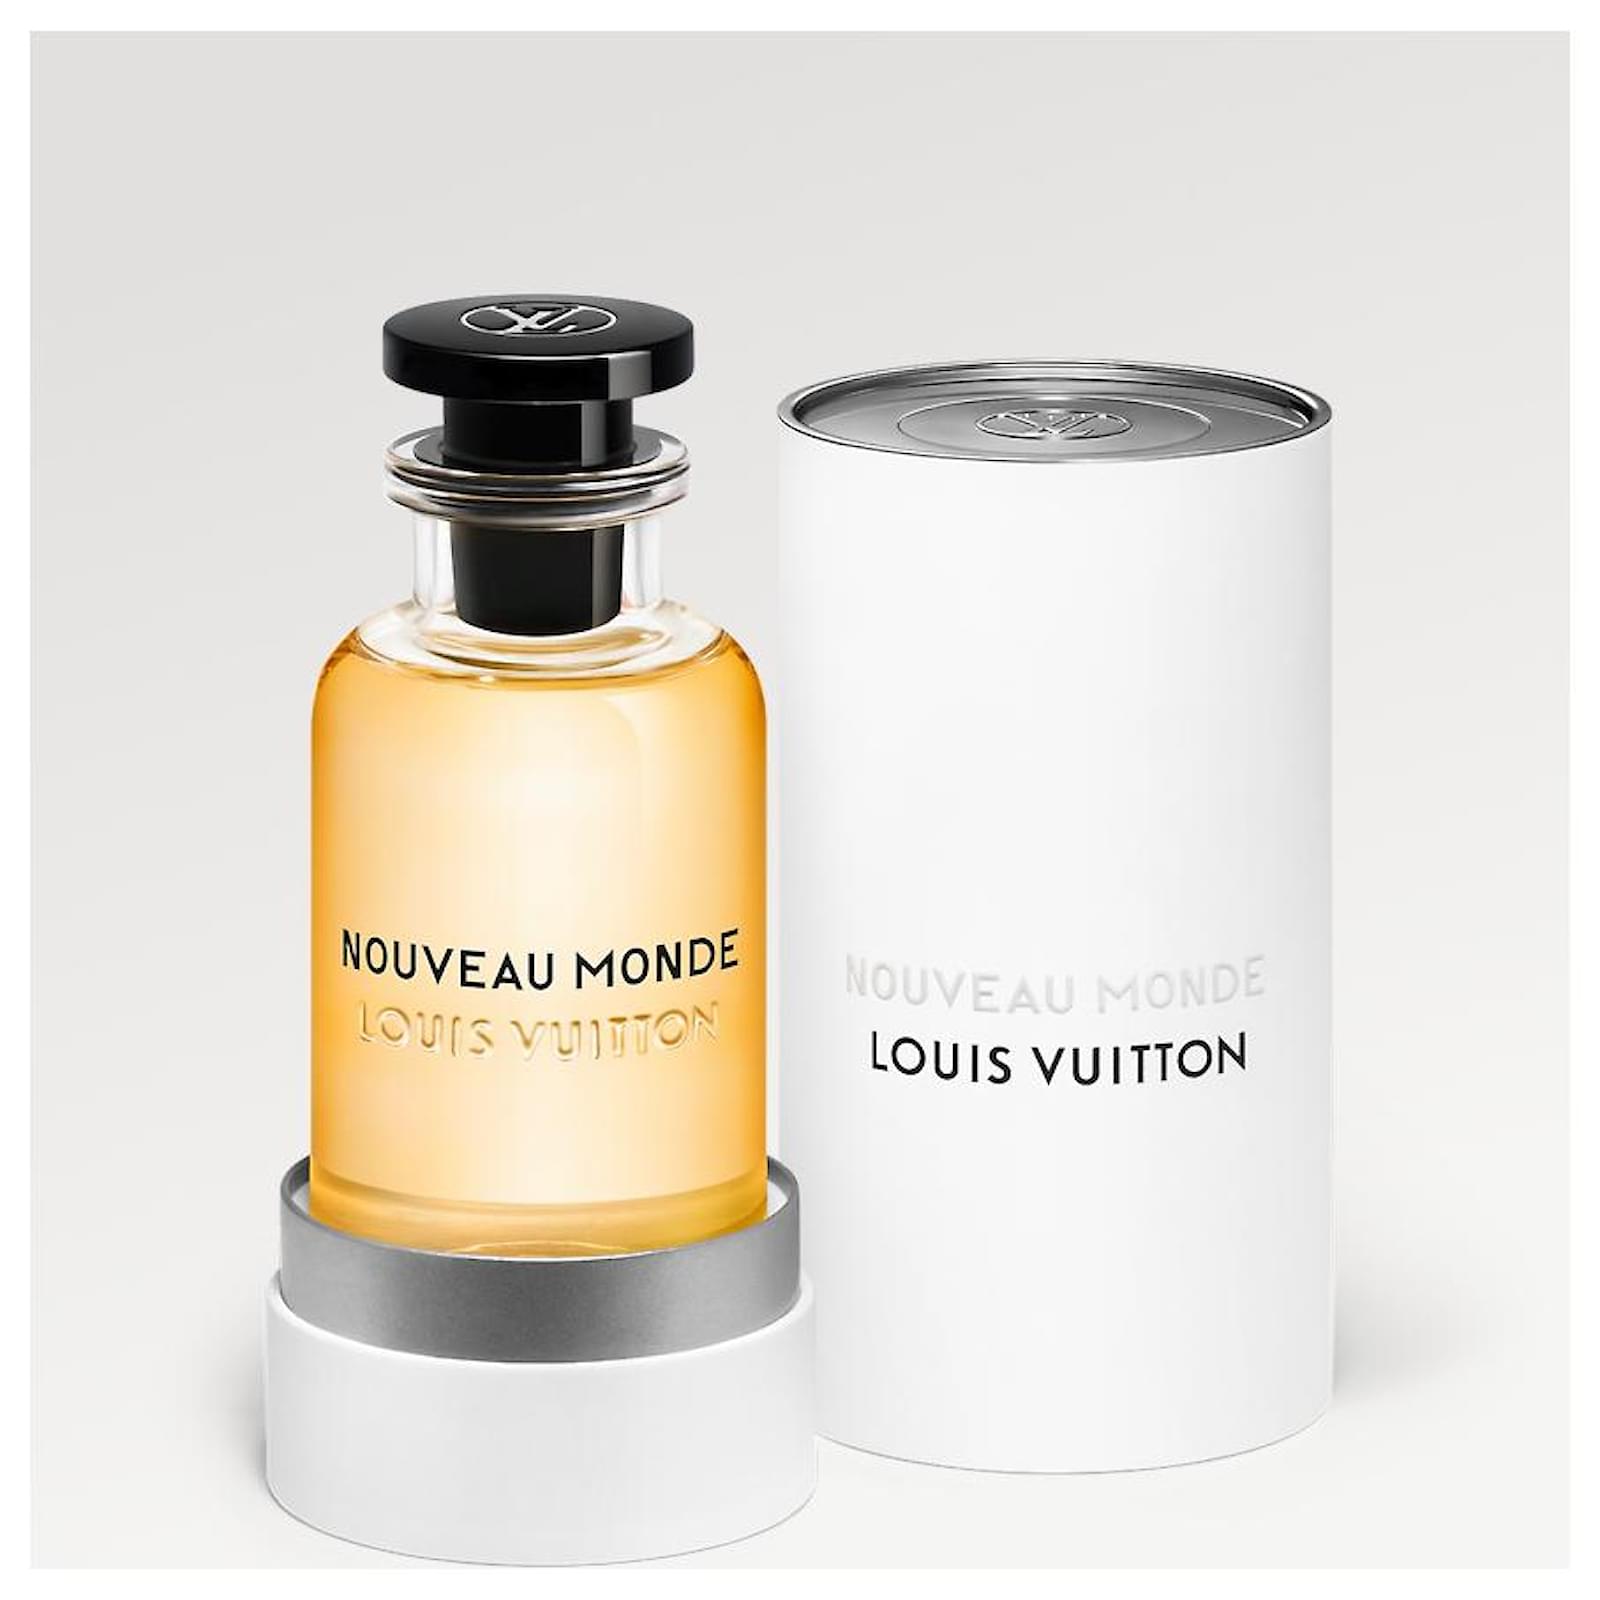 Louis Vuitton Nouveau Monde Cologne